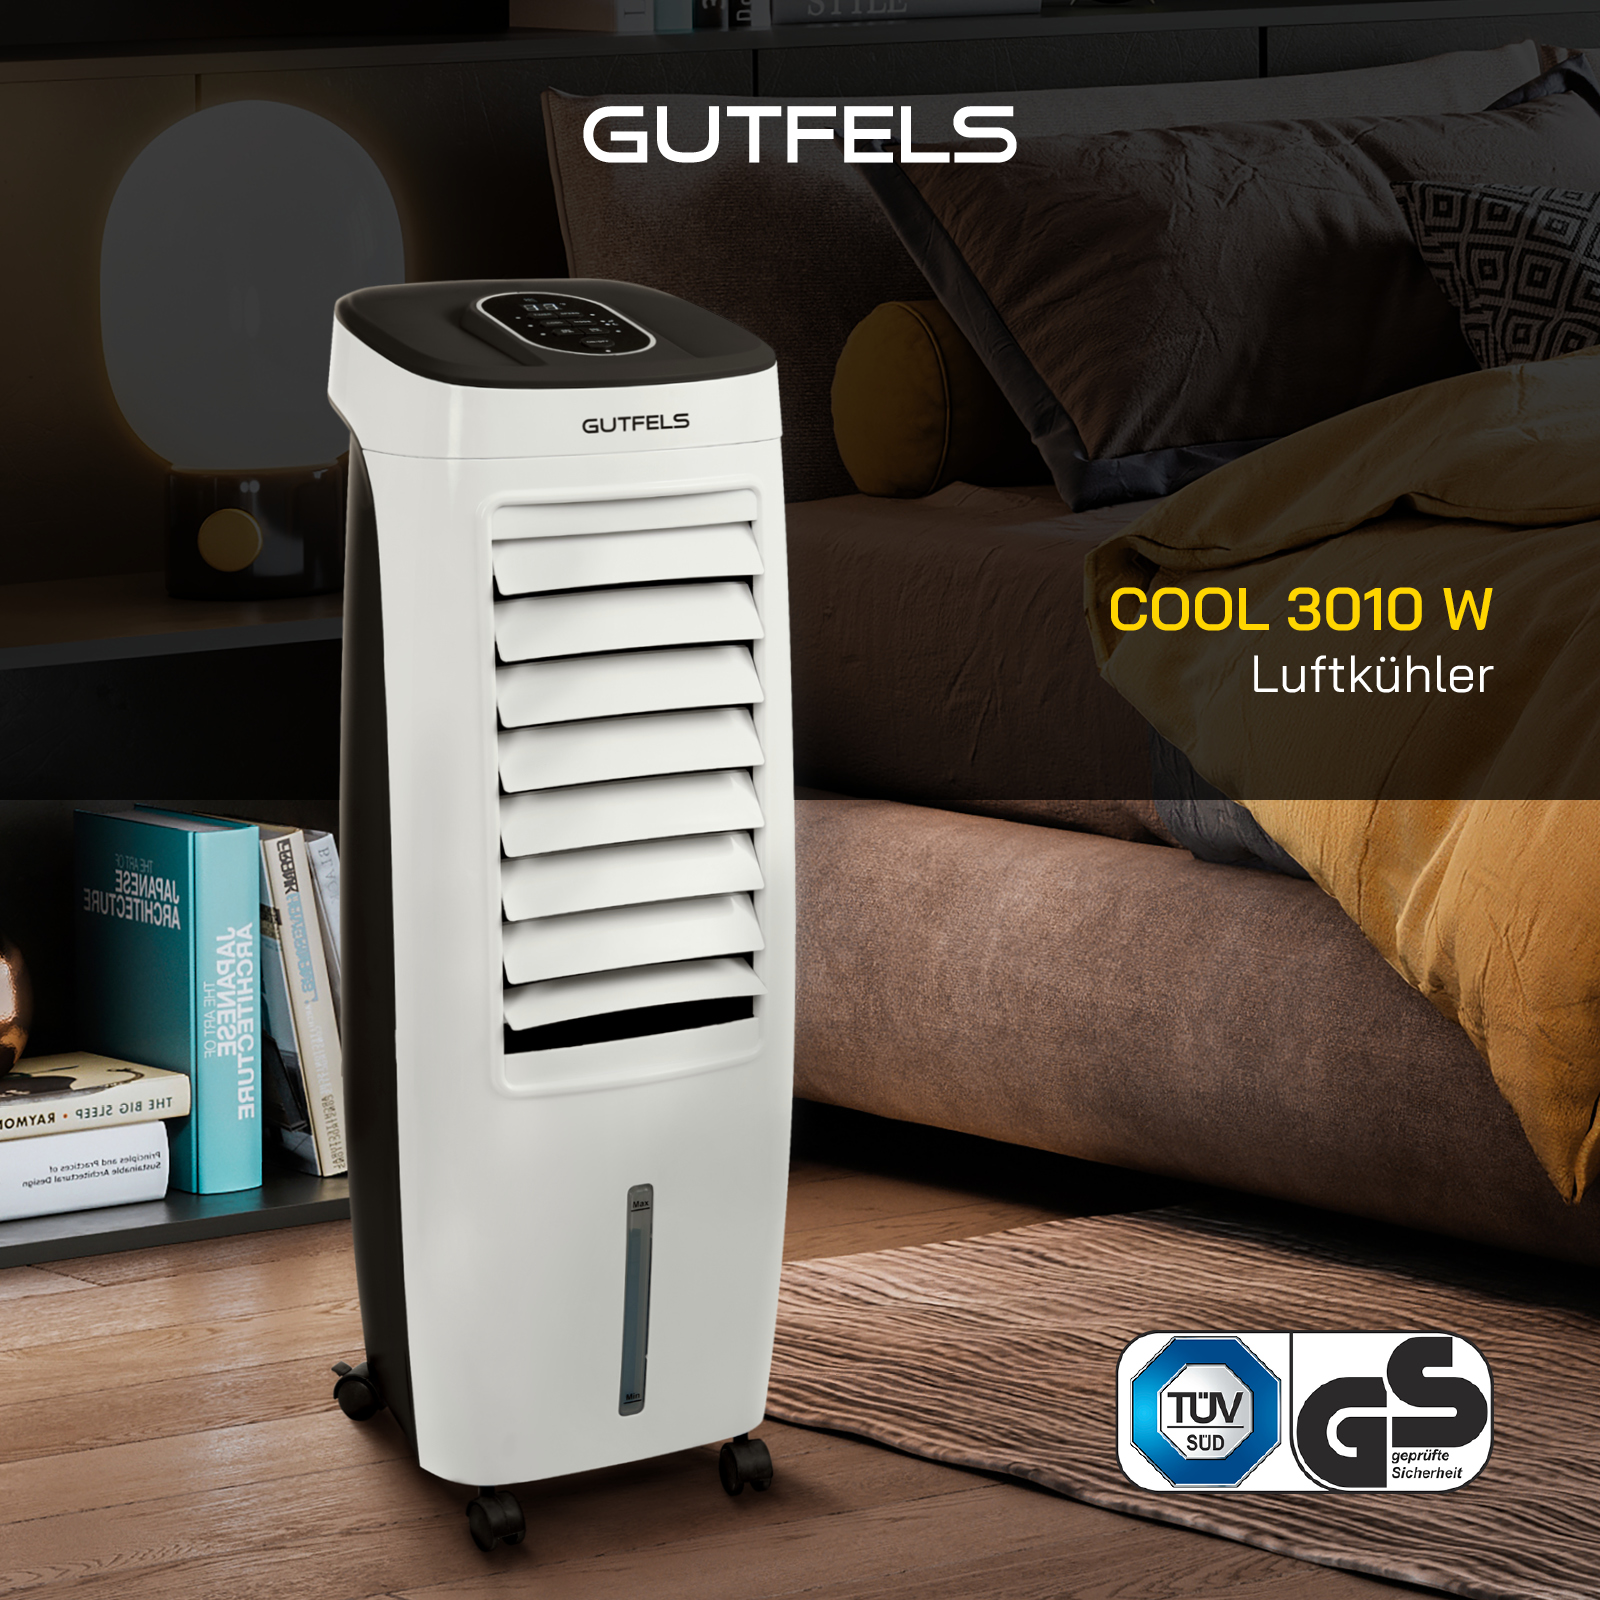 GUTFELS COOL 3010 W Luftkühler